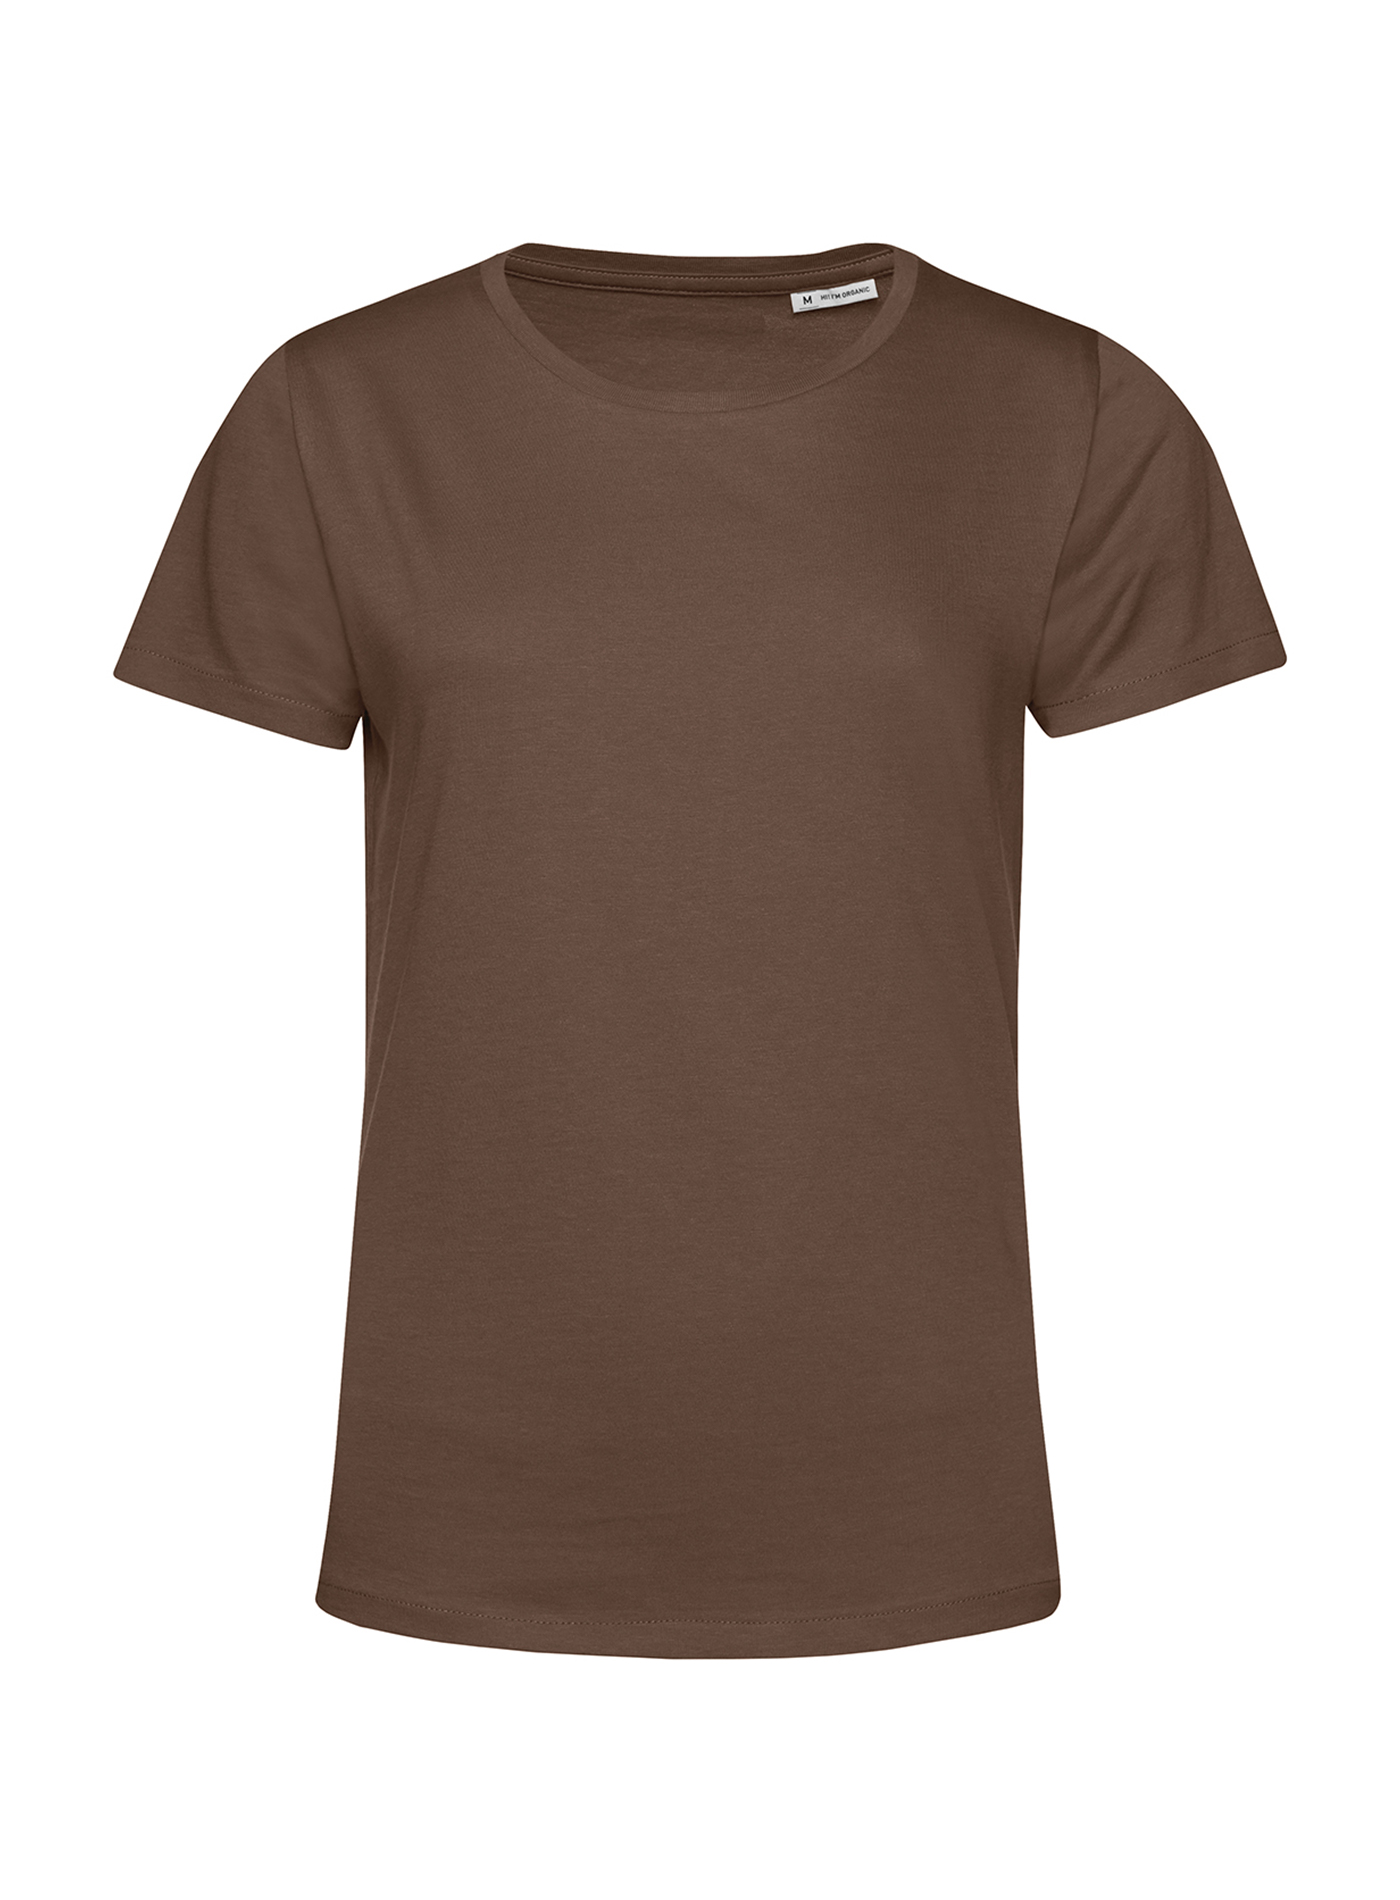 Dámské tričko B&C Collection Organic - Středně hnědá XL